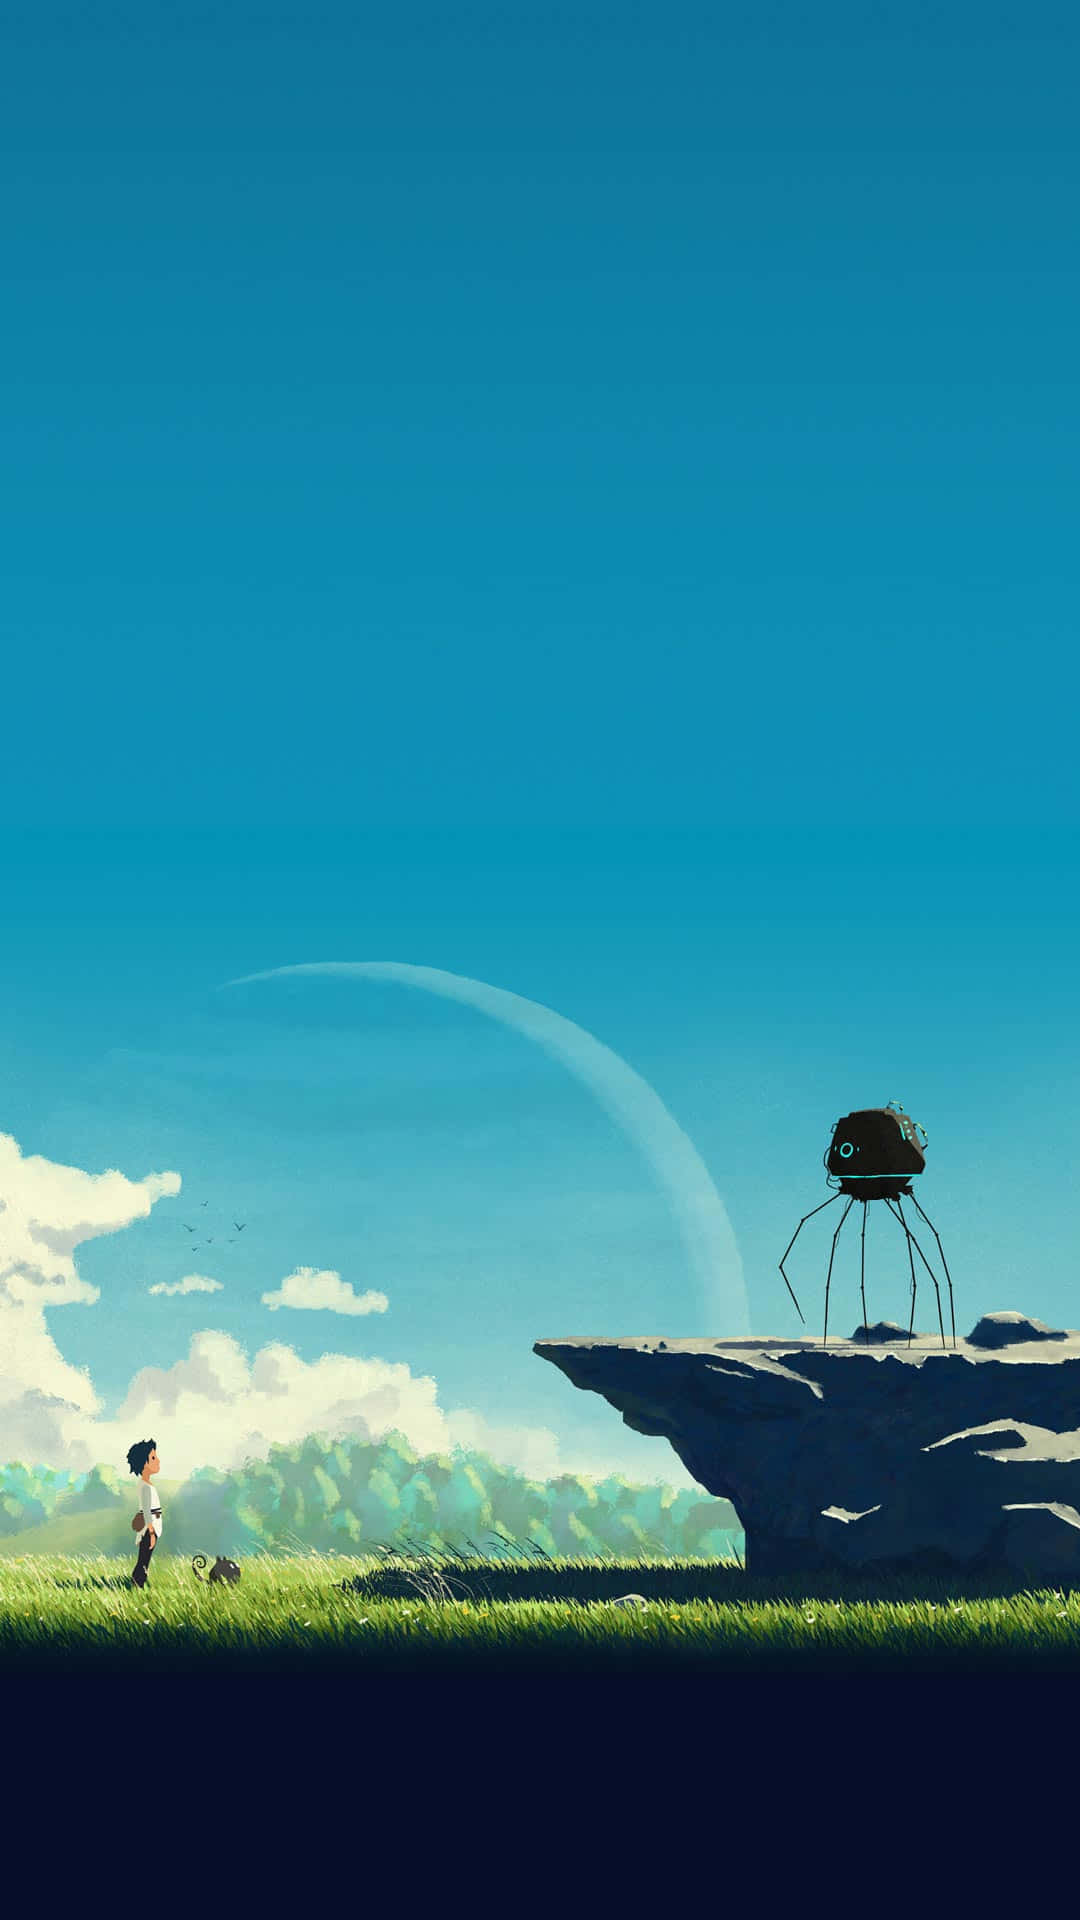 Obténahora El Exclusivo Teléfono Studio Ghibli Y Experimenta La Belleza De La Animación Clásica Como Nunca Antes. Fondo de pantalla